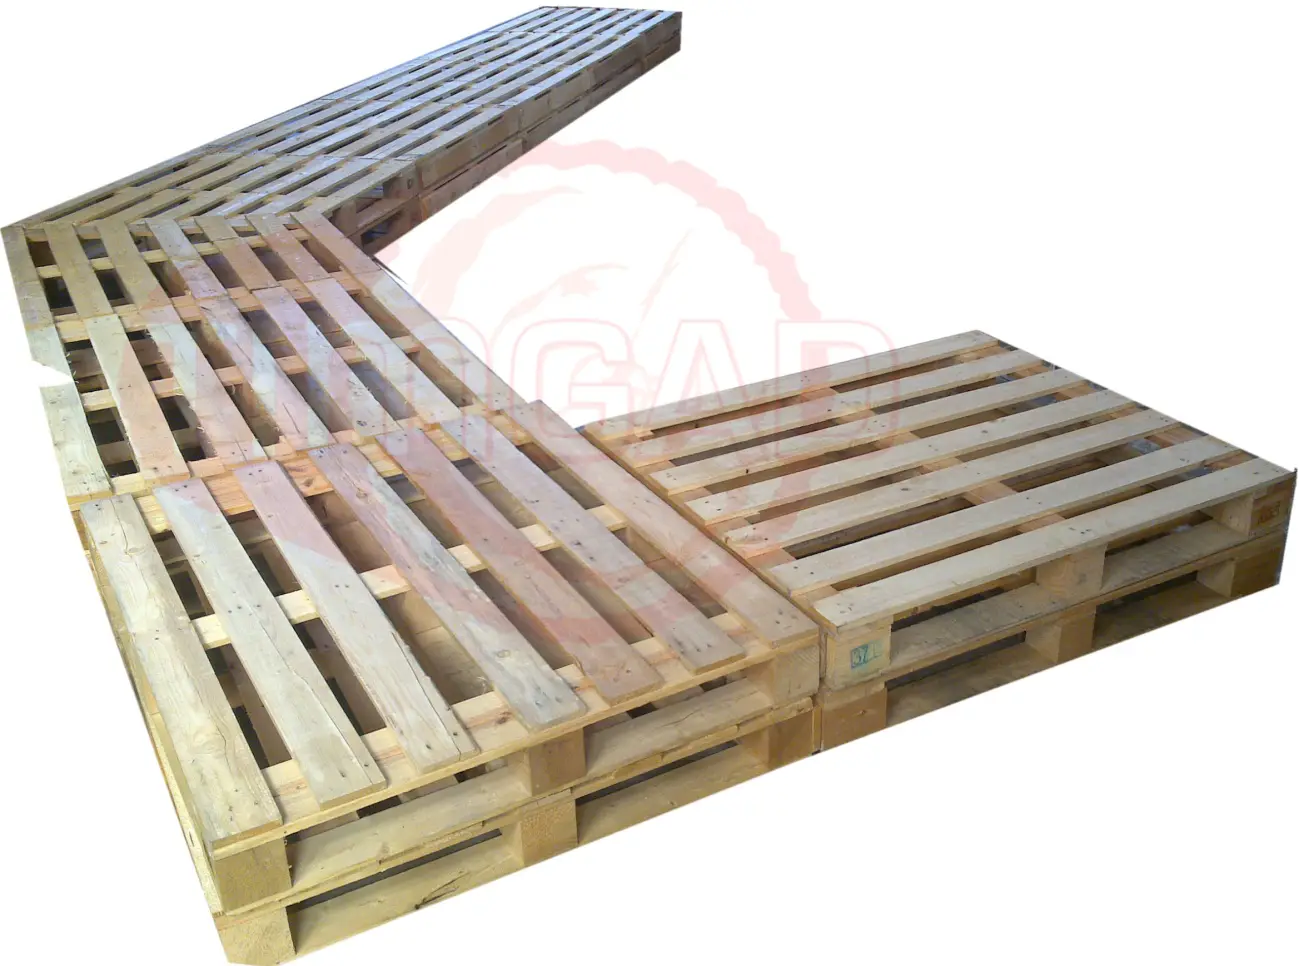 Diseño de muebles con palets de madera - TIMGAD